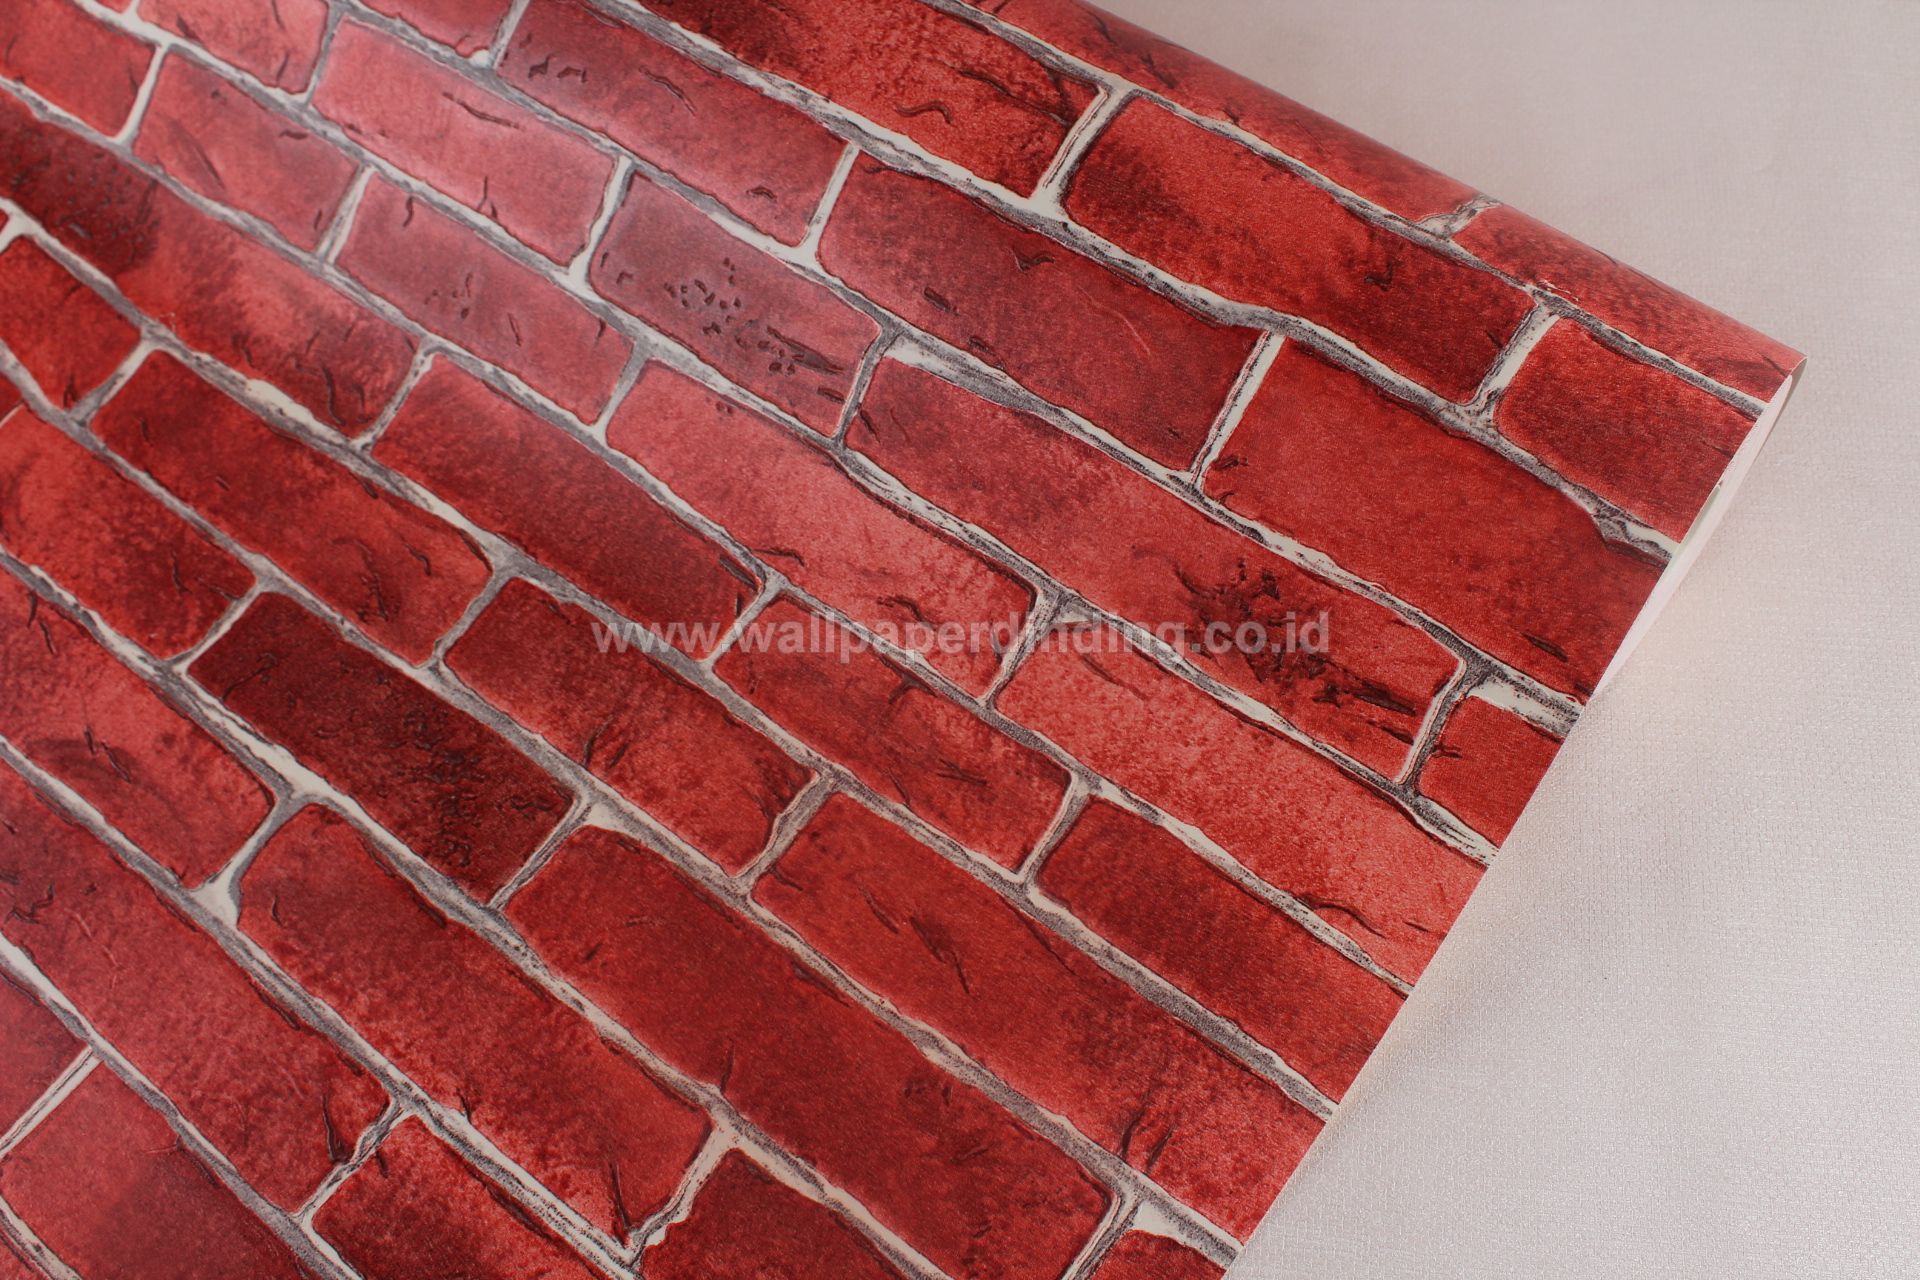 Wallpaper Dinding Motif Batu Alam - Jual Wallpaper Dinding Batu Bata - HD Wallpaper 